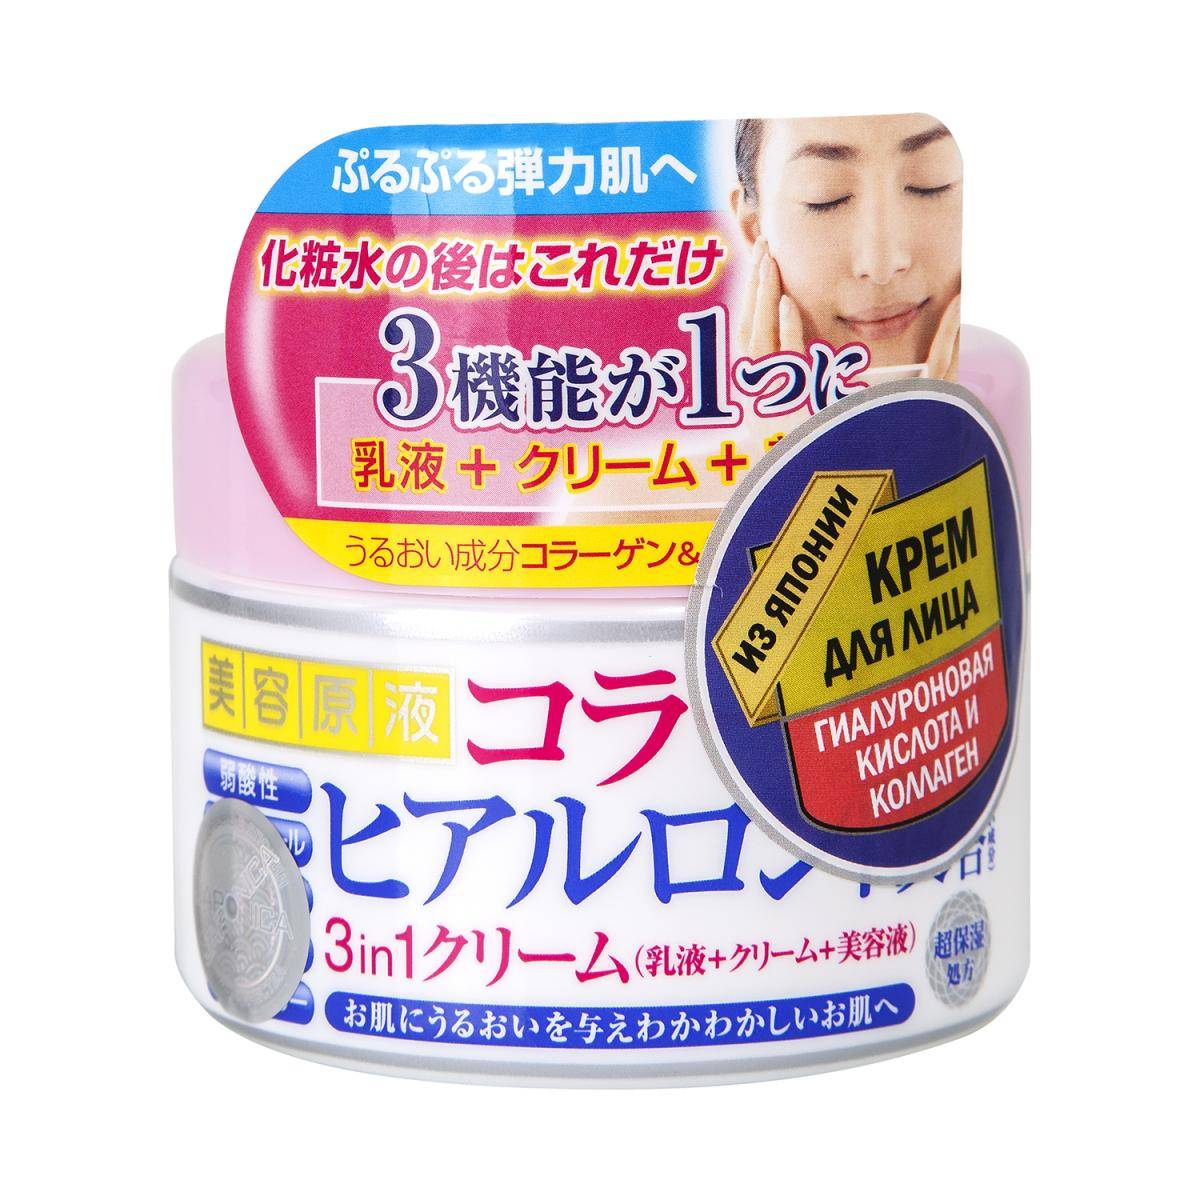 Японские крема для лица - скинетика